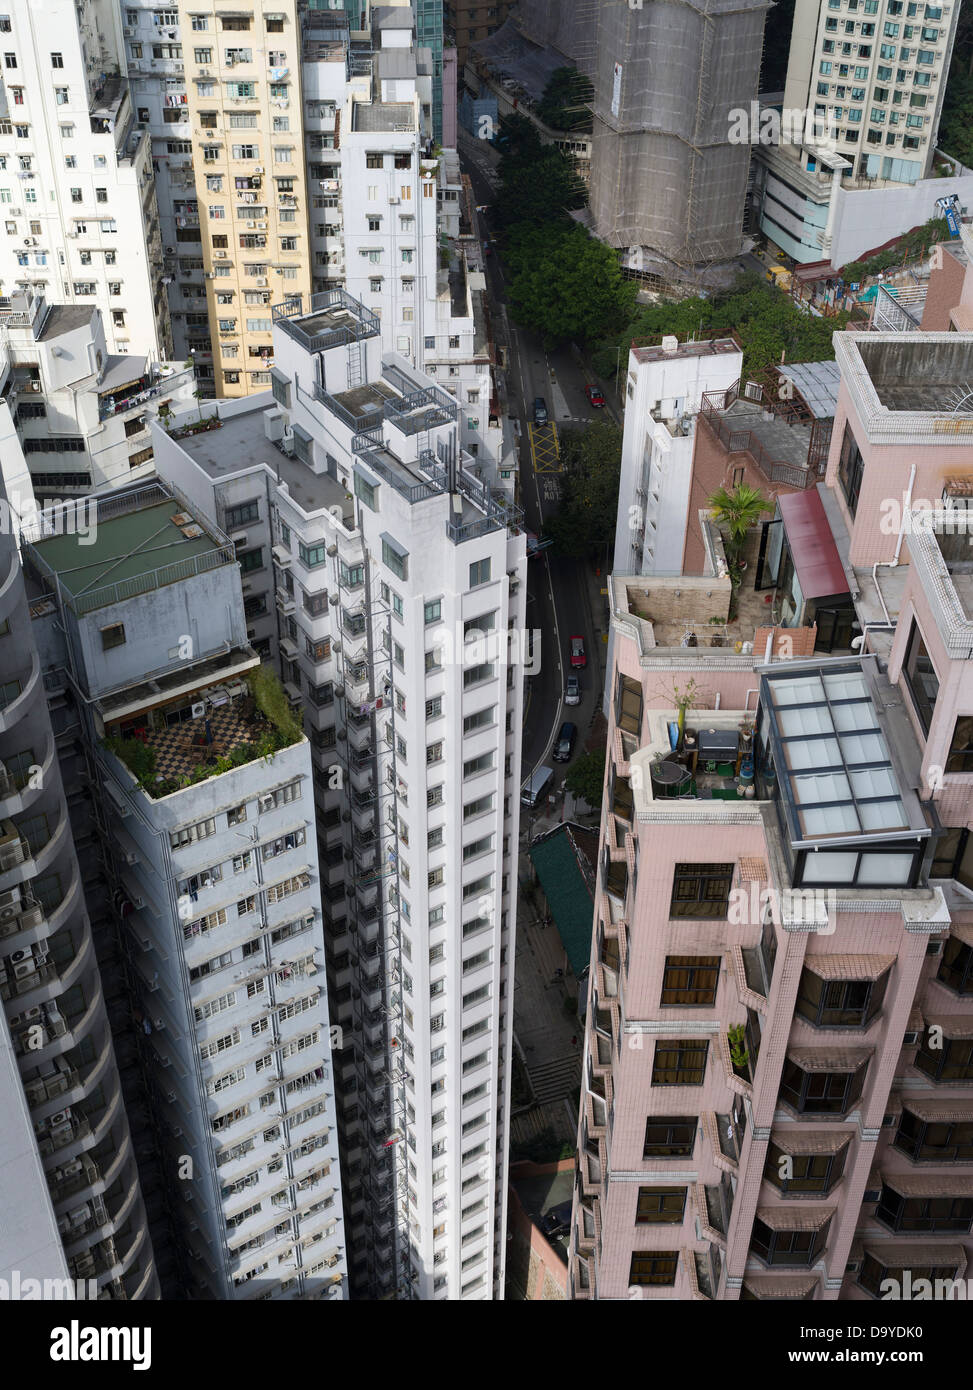 dh CAUSEWAY BAY HONG KONG des appartements chinois de haute hauteur gratte-ciel bâtiments blocs tour dense dans la zone résidentielle Banque D'Images